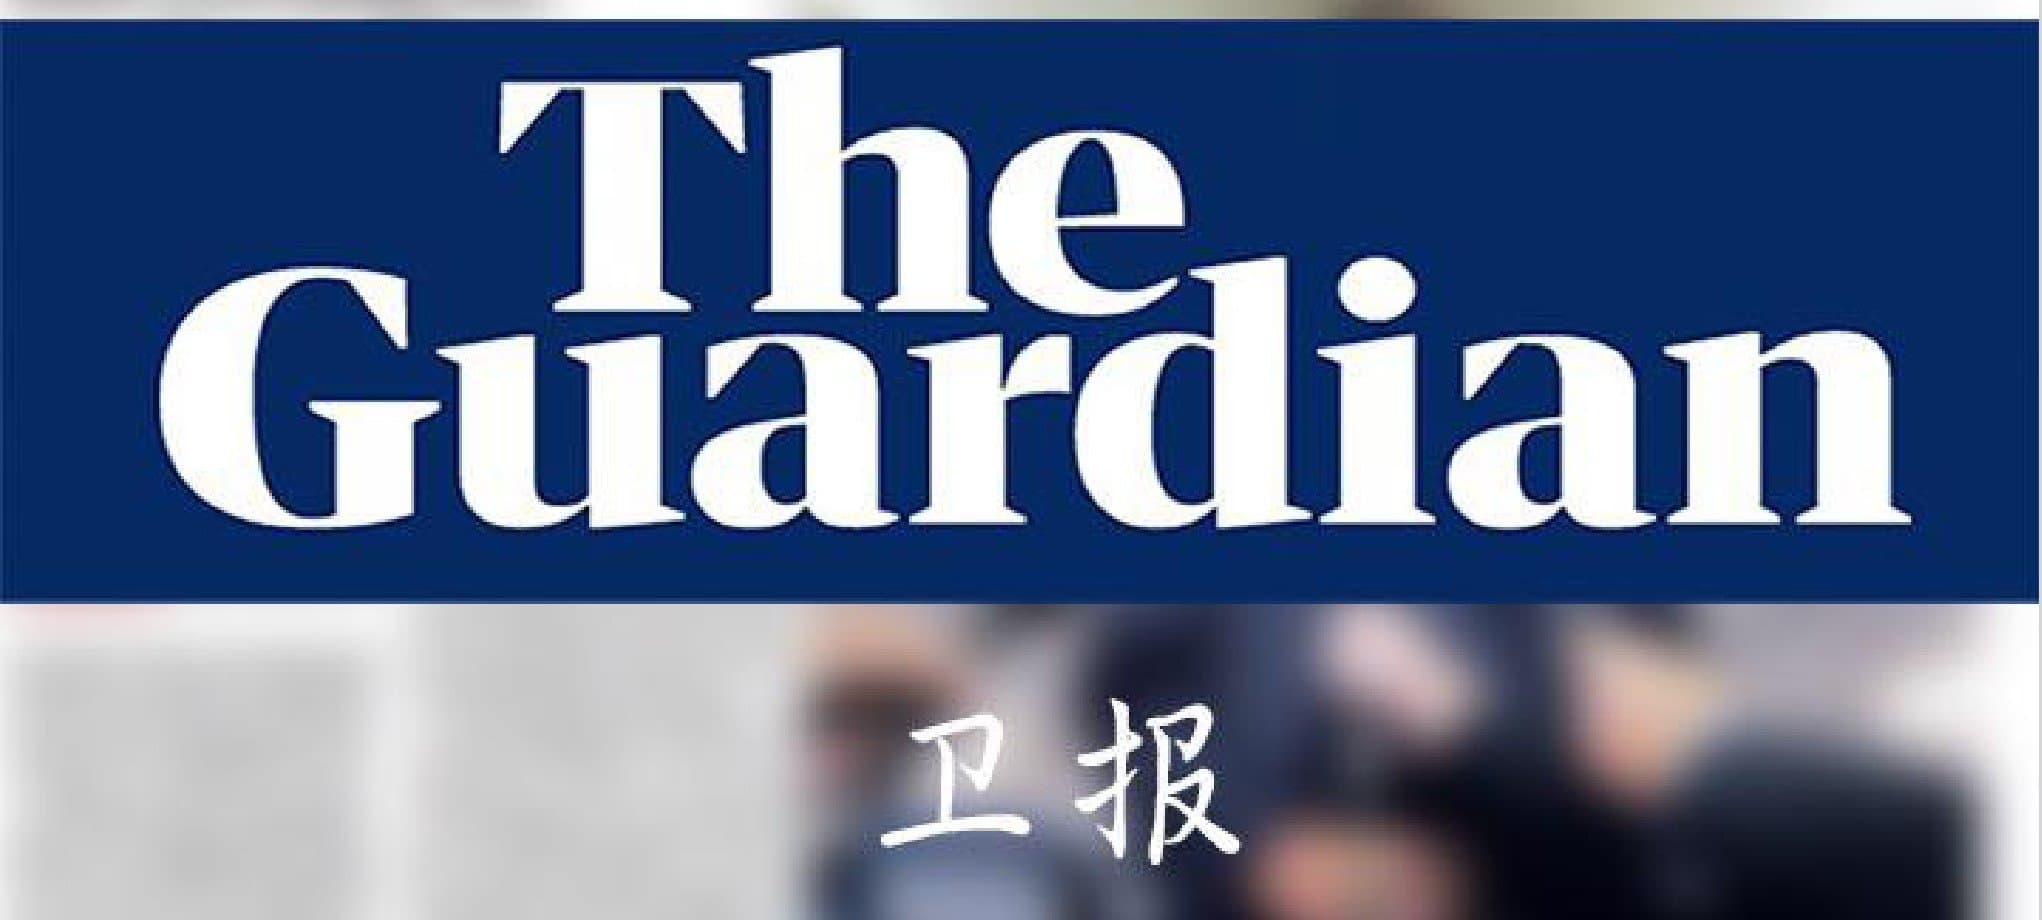 英国《卫报》The Guardian